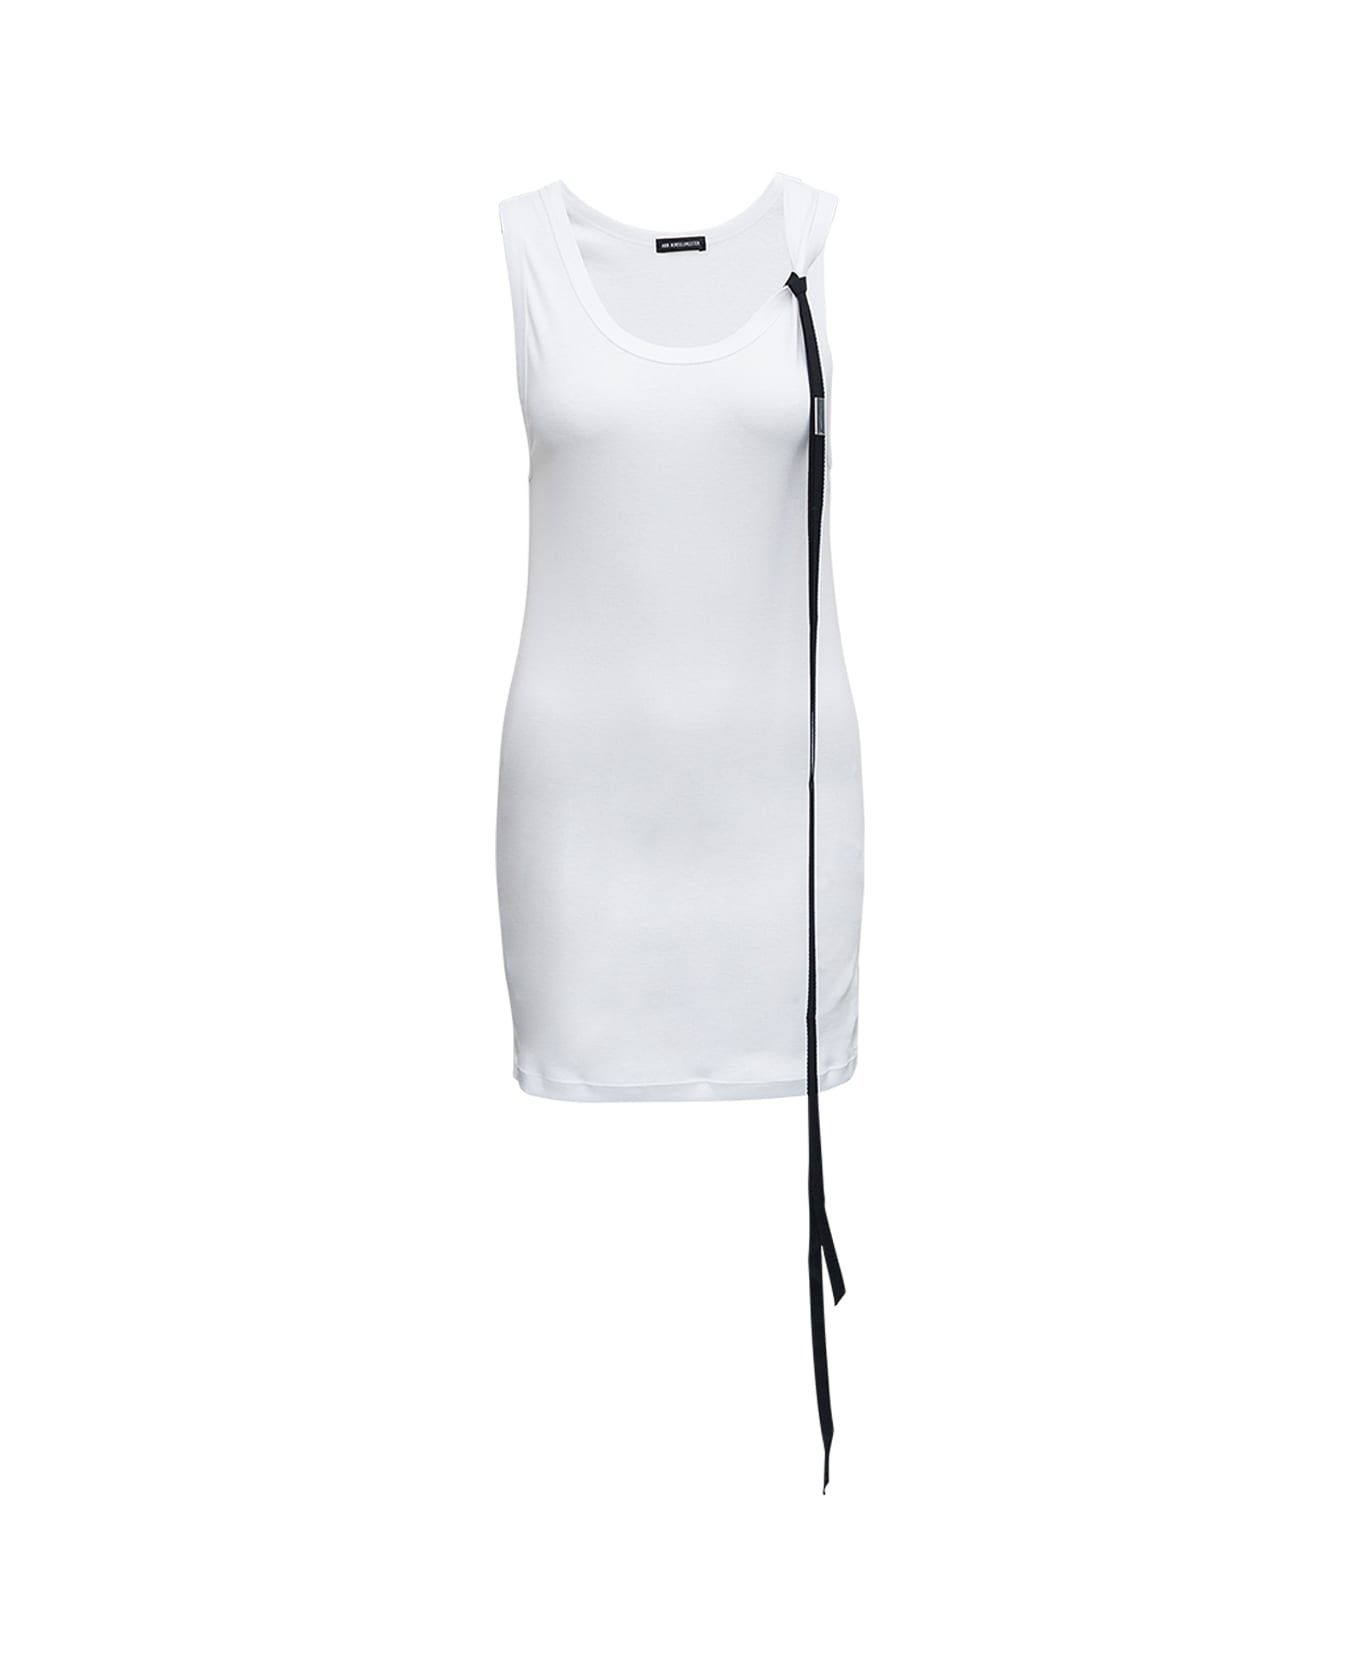 Ann Demeulemeester Sveva Top In White Ribbed Jersey - White